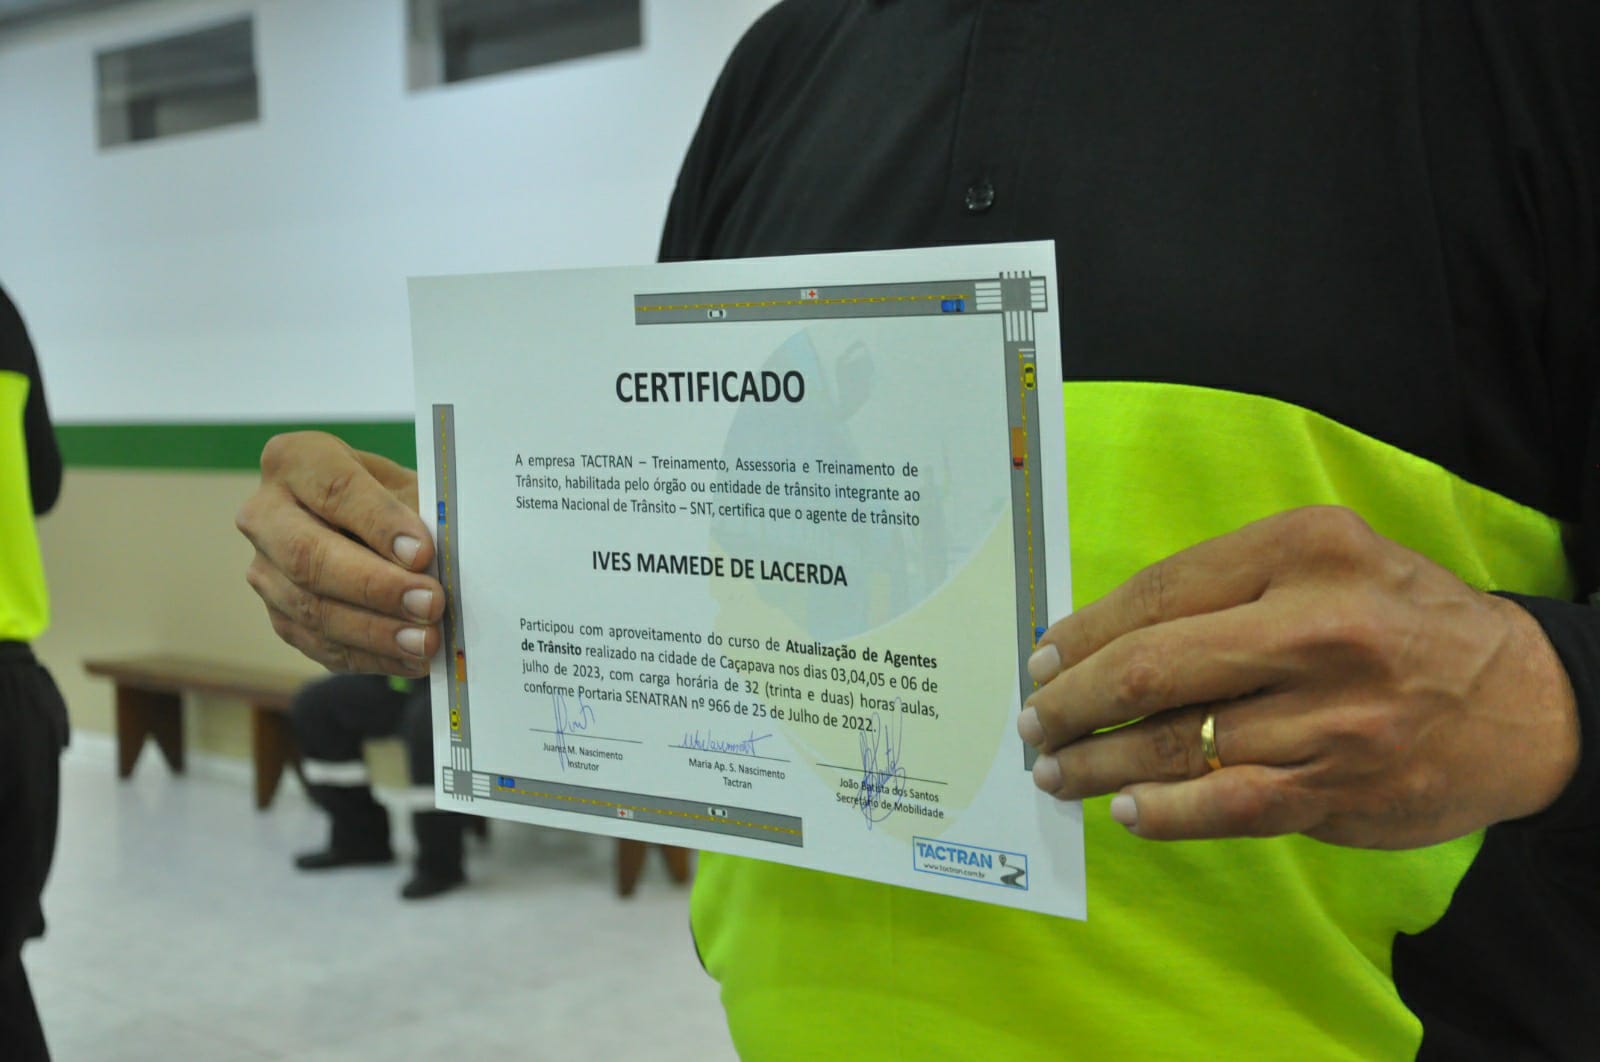 Agentes de trânsito recebem certificado pelo curso de atualização na última quinta-feira 